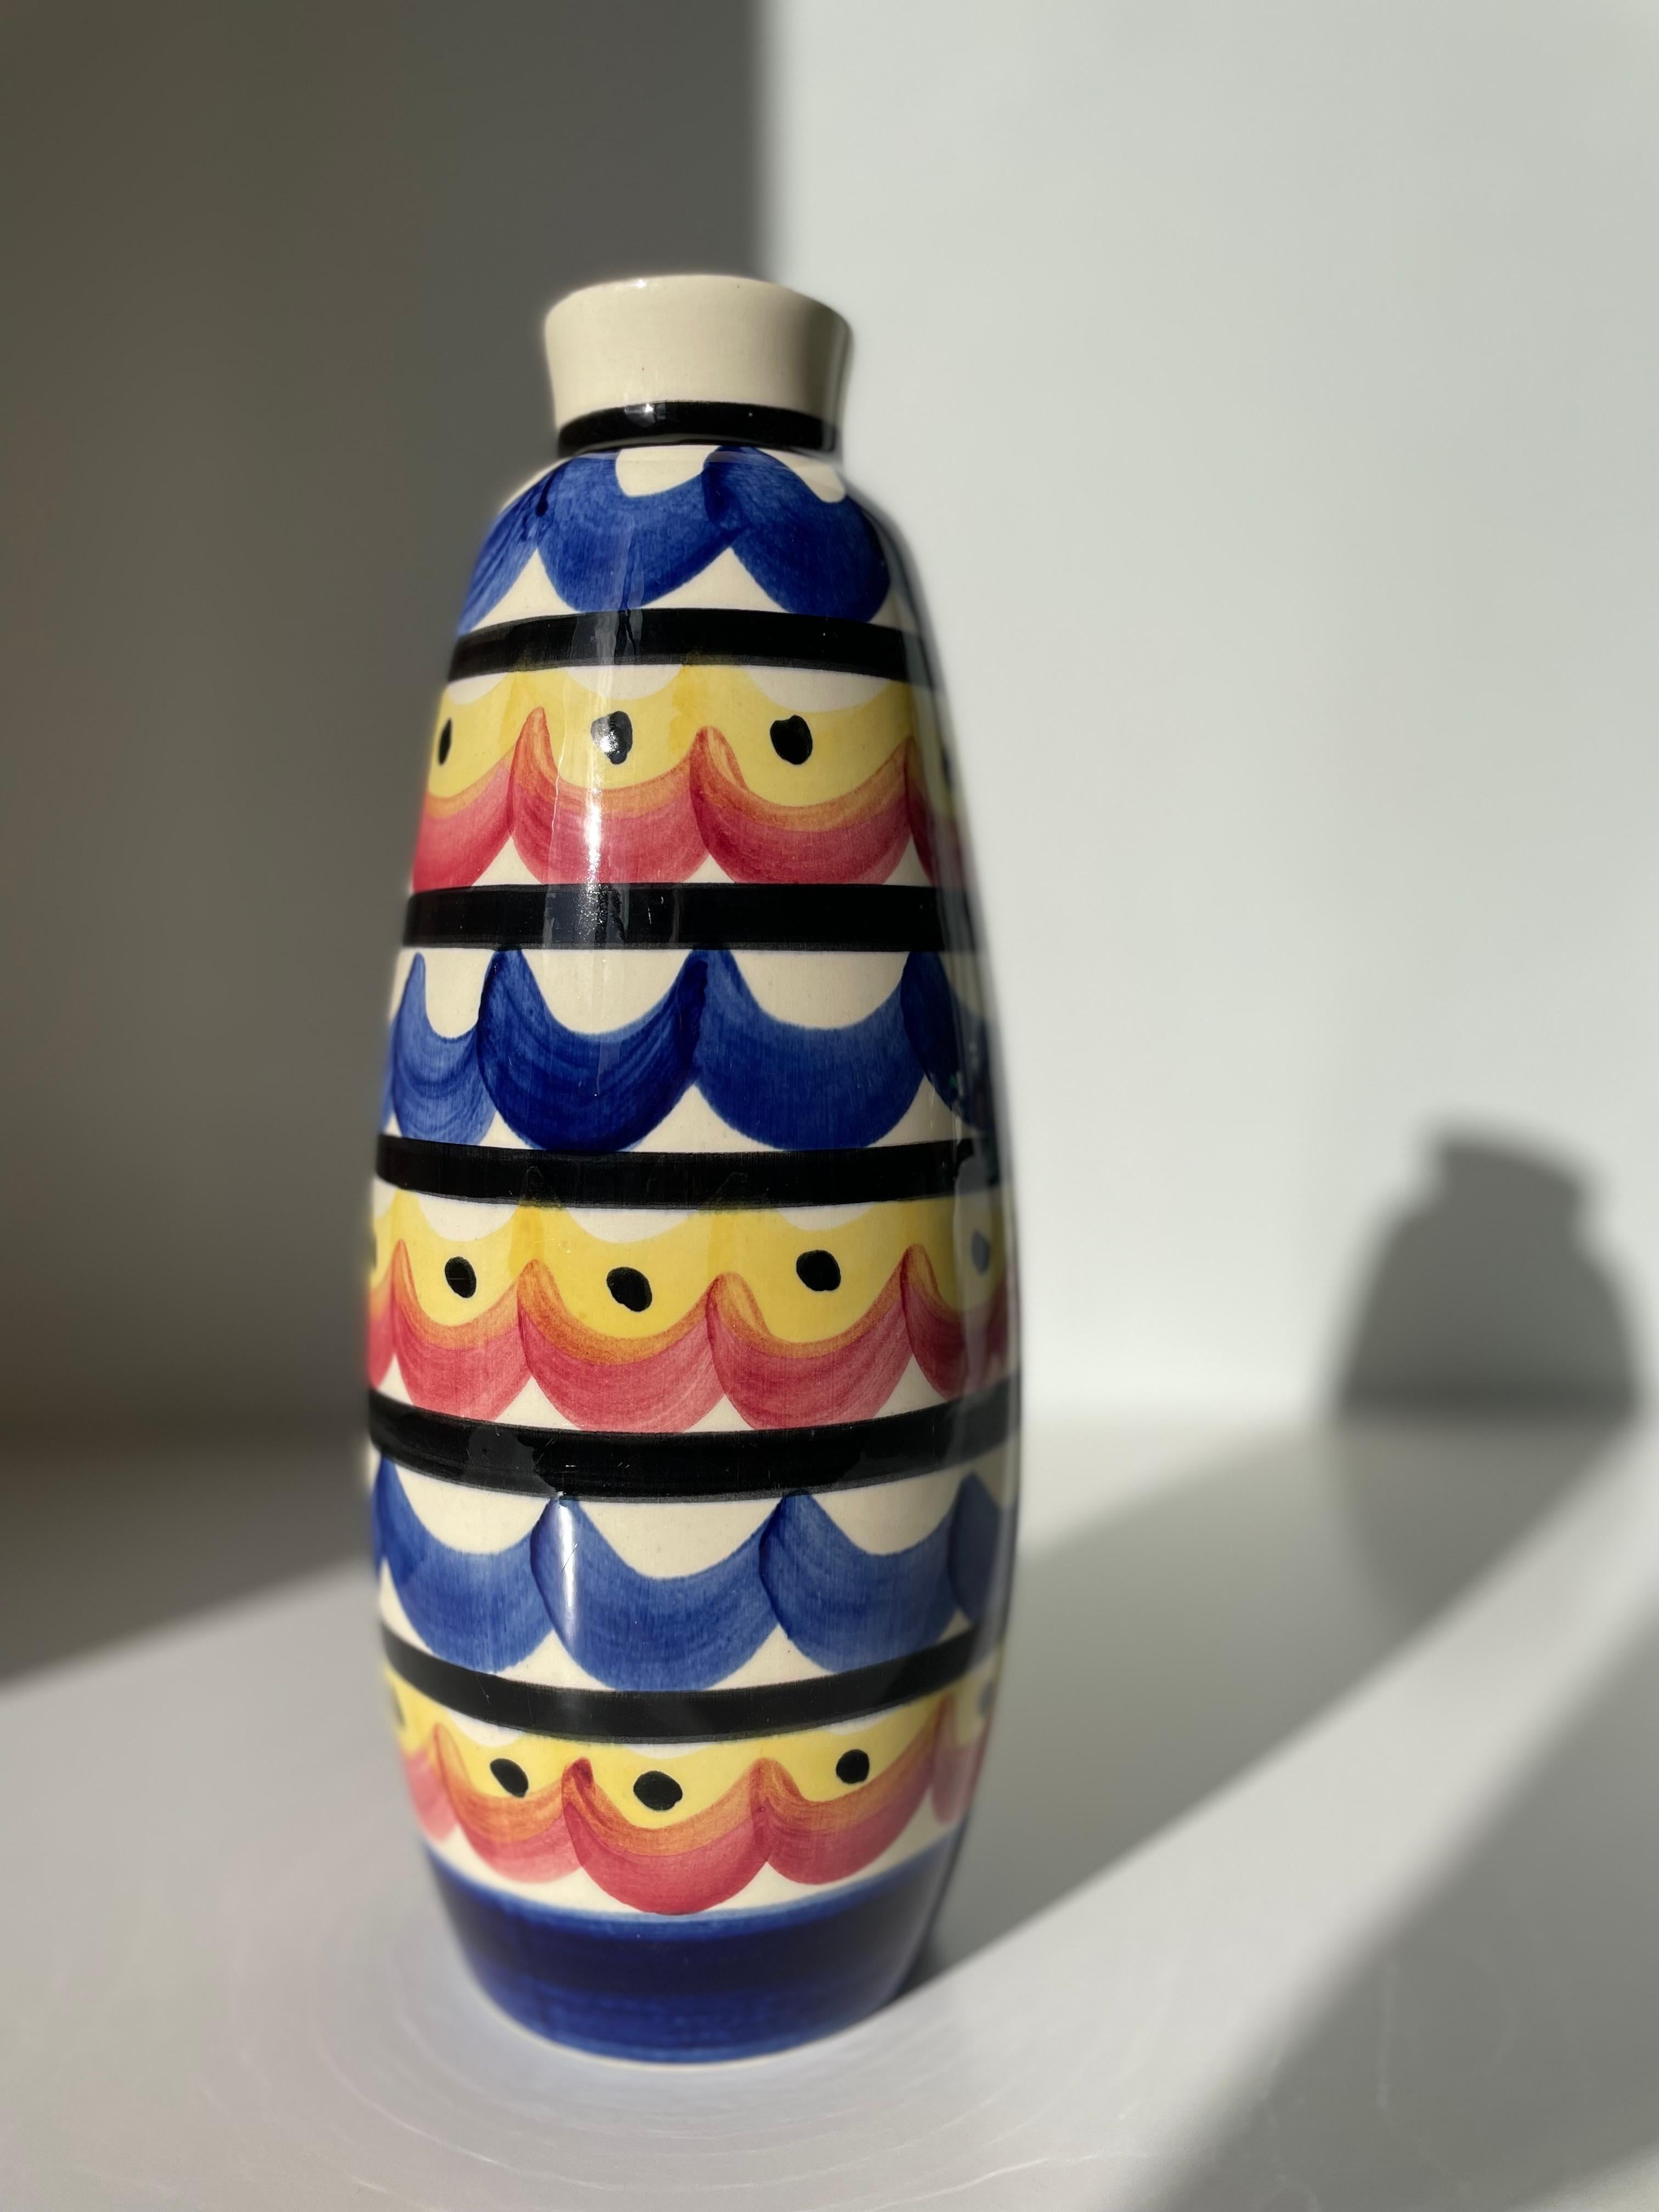 Grand vase maximaliste moderne multicolore fabriqué par Strehla dans les années 1970. Décorations lignées, ondulées et pointillées, peintes à la main mais symétriques, en noir, bleu, rouge et jaune. Estampillé et numéroté sous la base. Belle